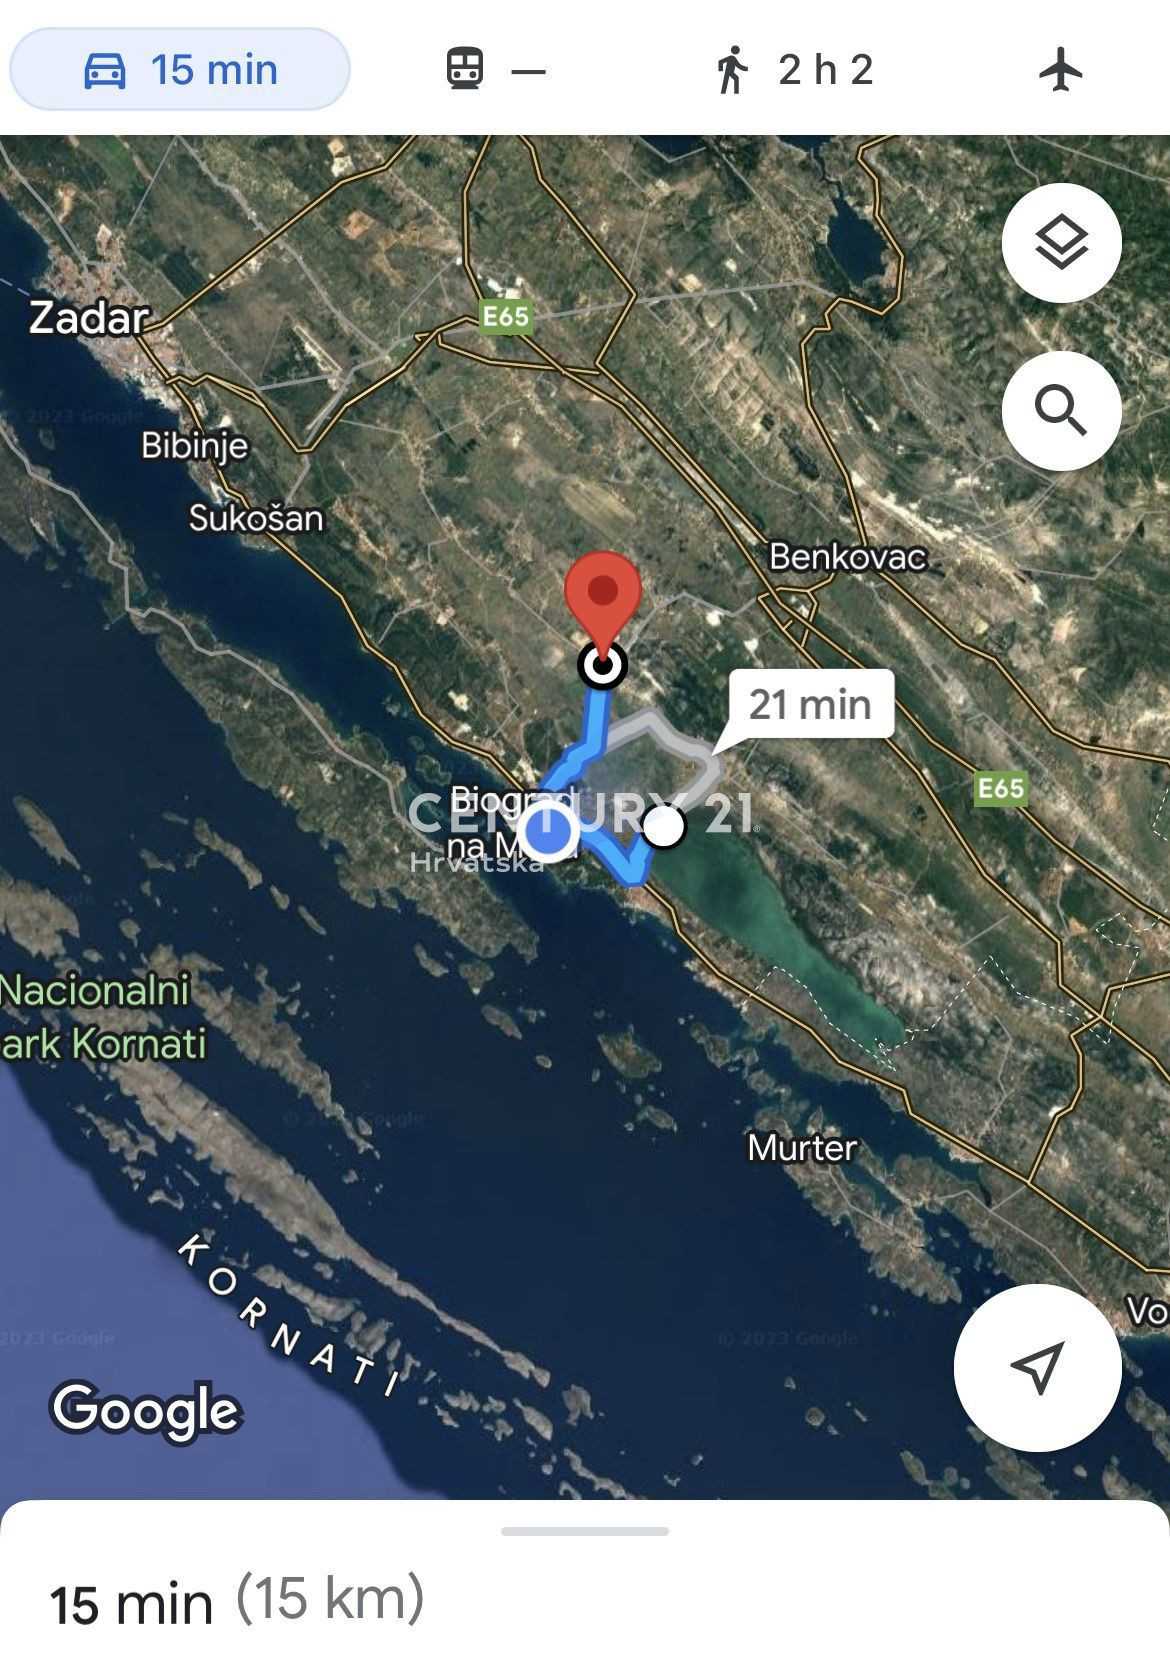 الأرض في Polača, Zadar County 11613978